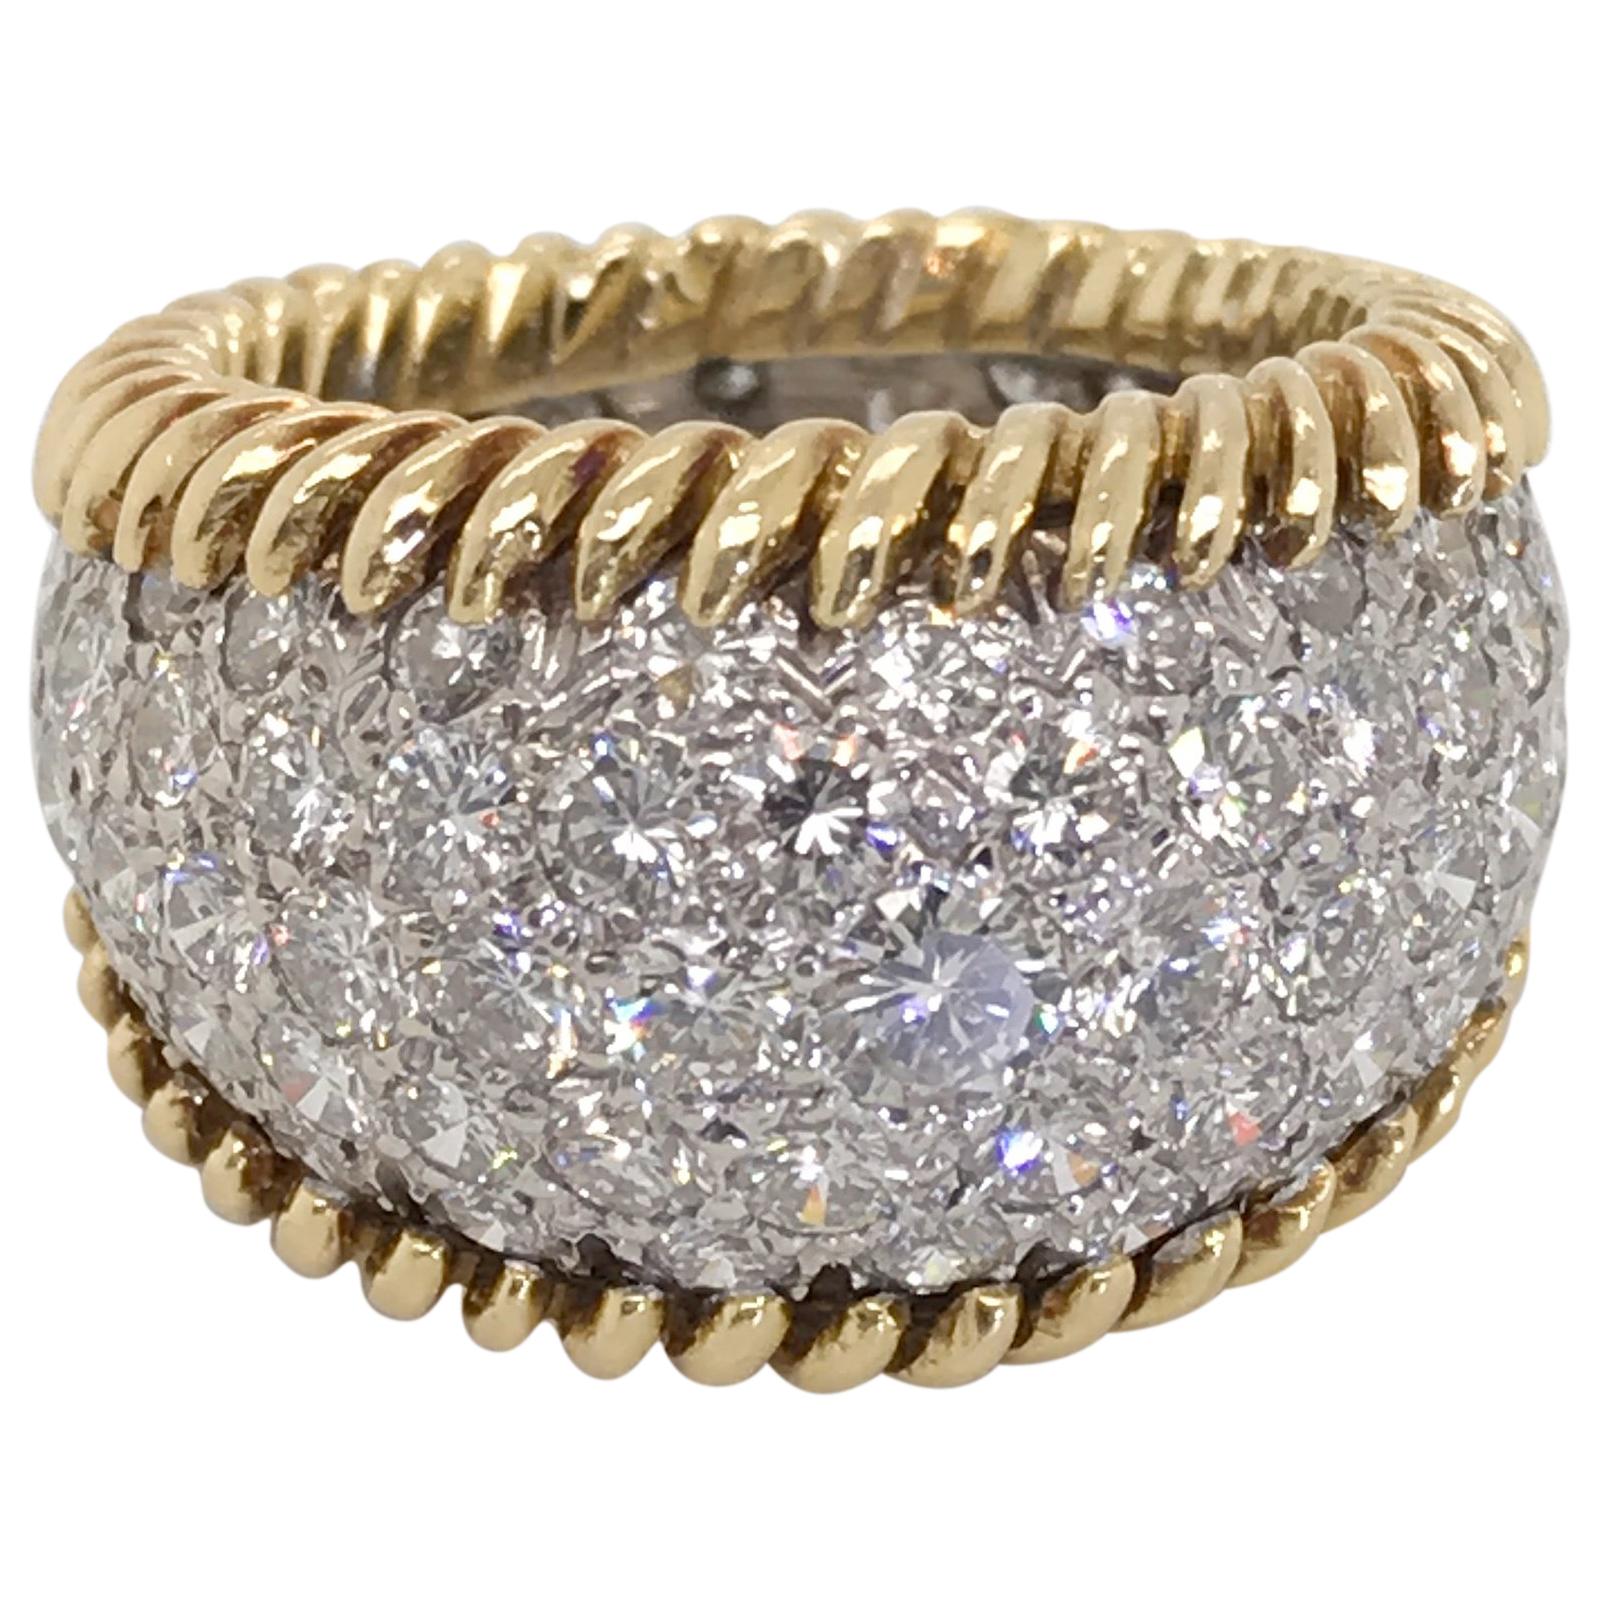 3.00 Carat Diamond Pave Set & 18 Karat Yellow Gold Ring - Ring Size 5.5